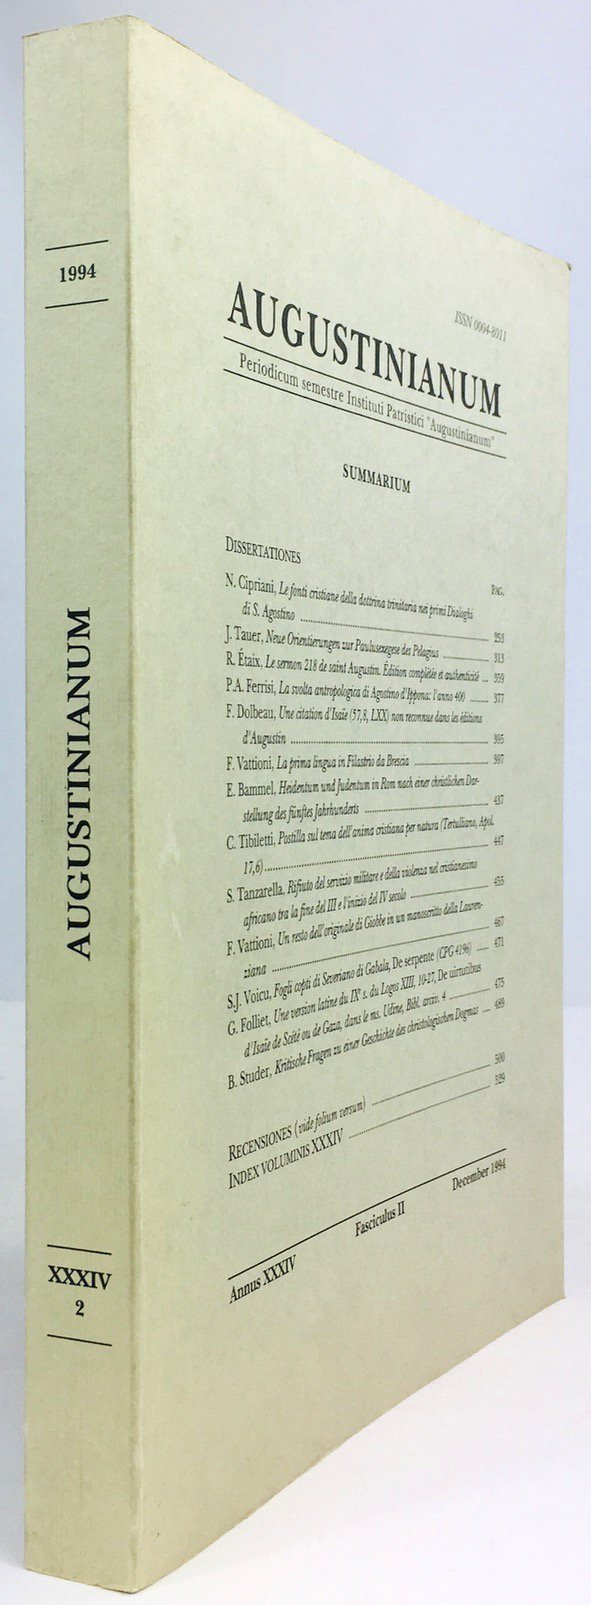 Abbildung von "Augustinianum. Periodicum semestre Instituti Patrisci "Augustinianum". Annus XXXIV., Fasciculus II..."